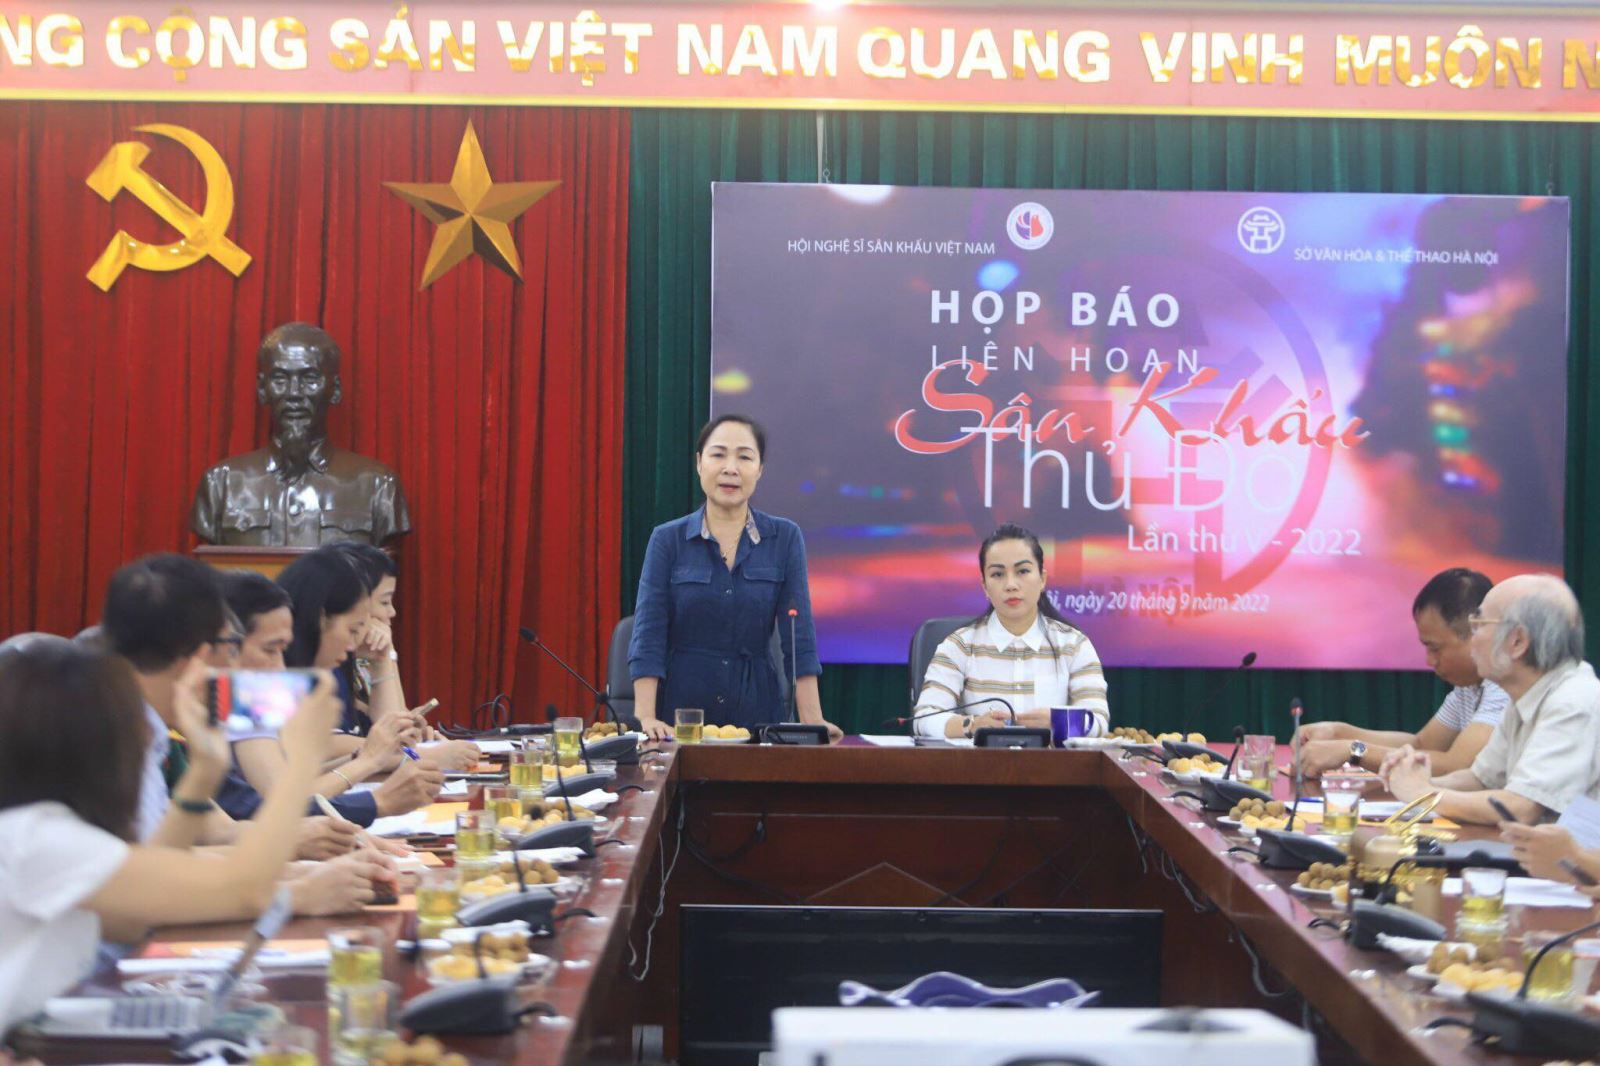 13 vở diễn về Hà Nội tham dự Liên hoan Sân khấu Thủ đô 2022 - ảnh 1